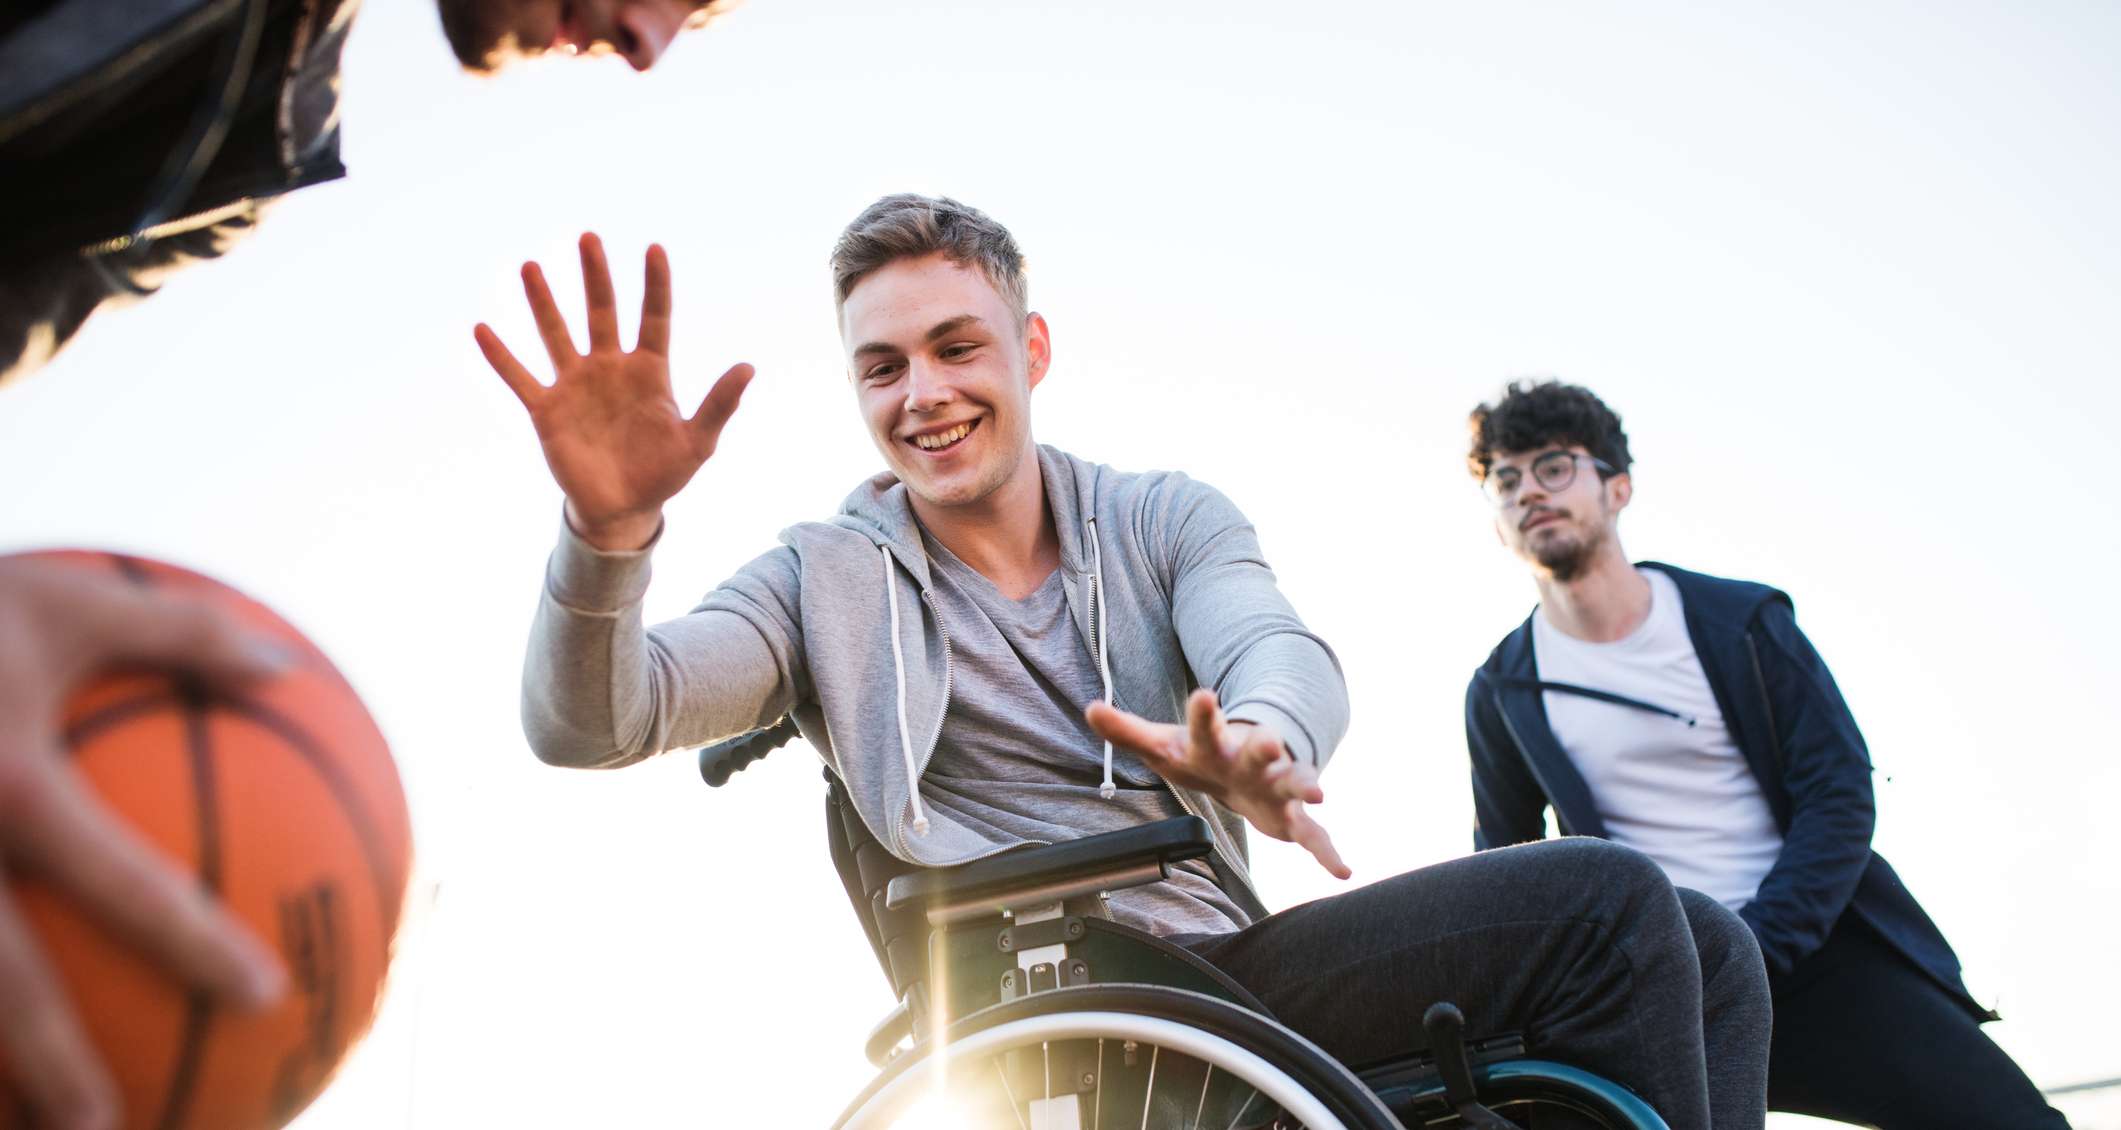 Unfallversicherung mit Progression: Mann im Rollstuhl spielt Basketball